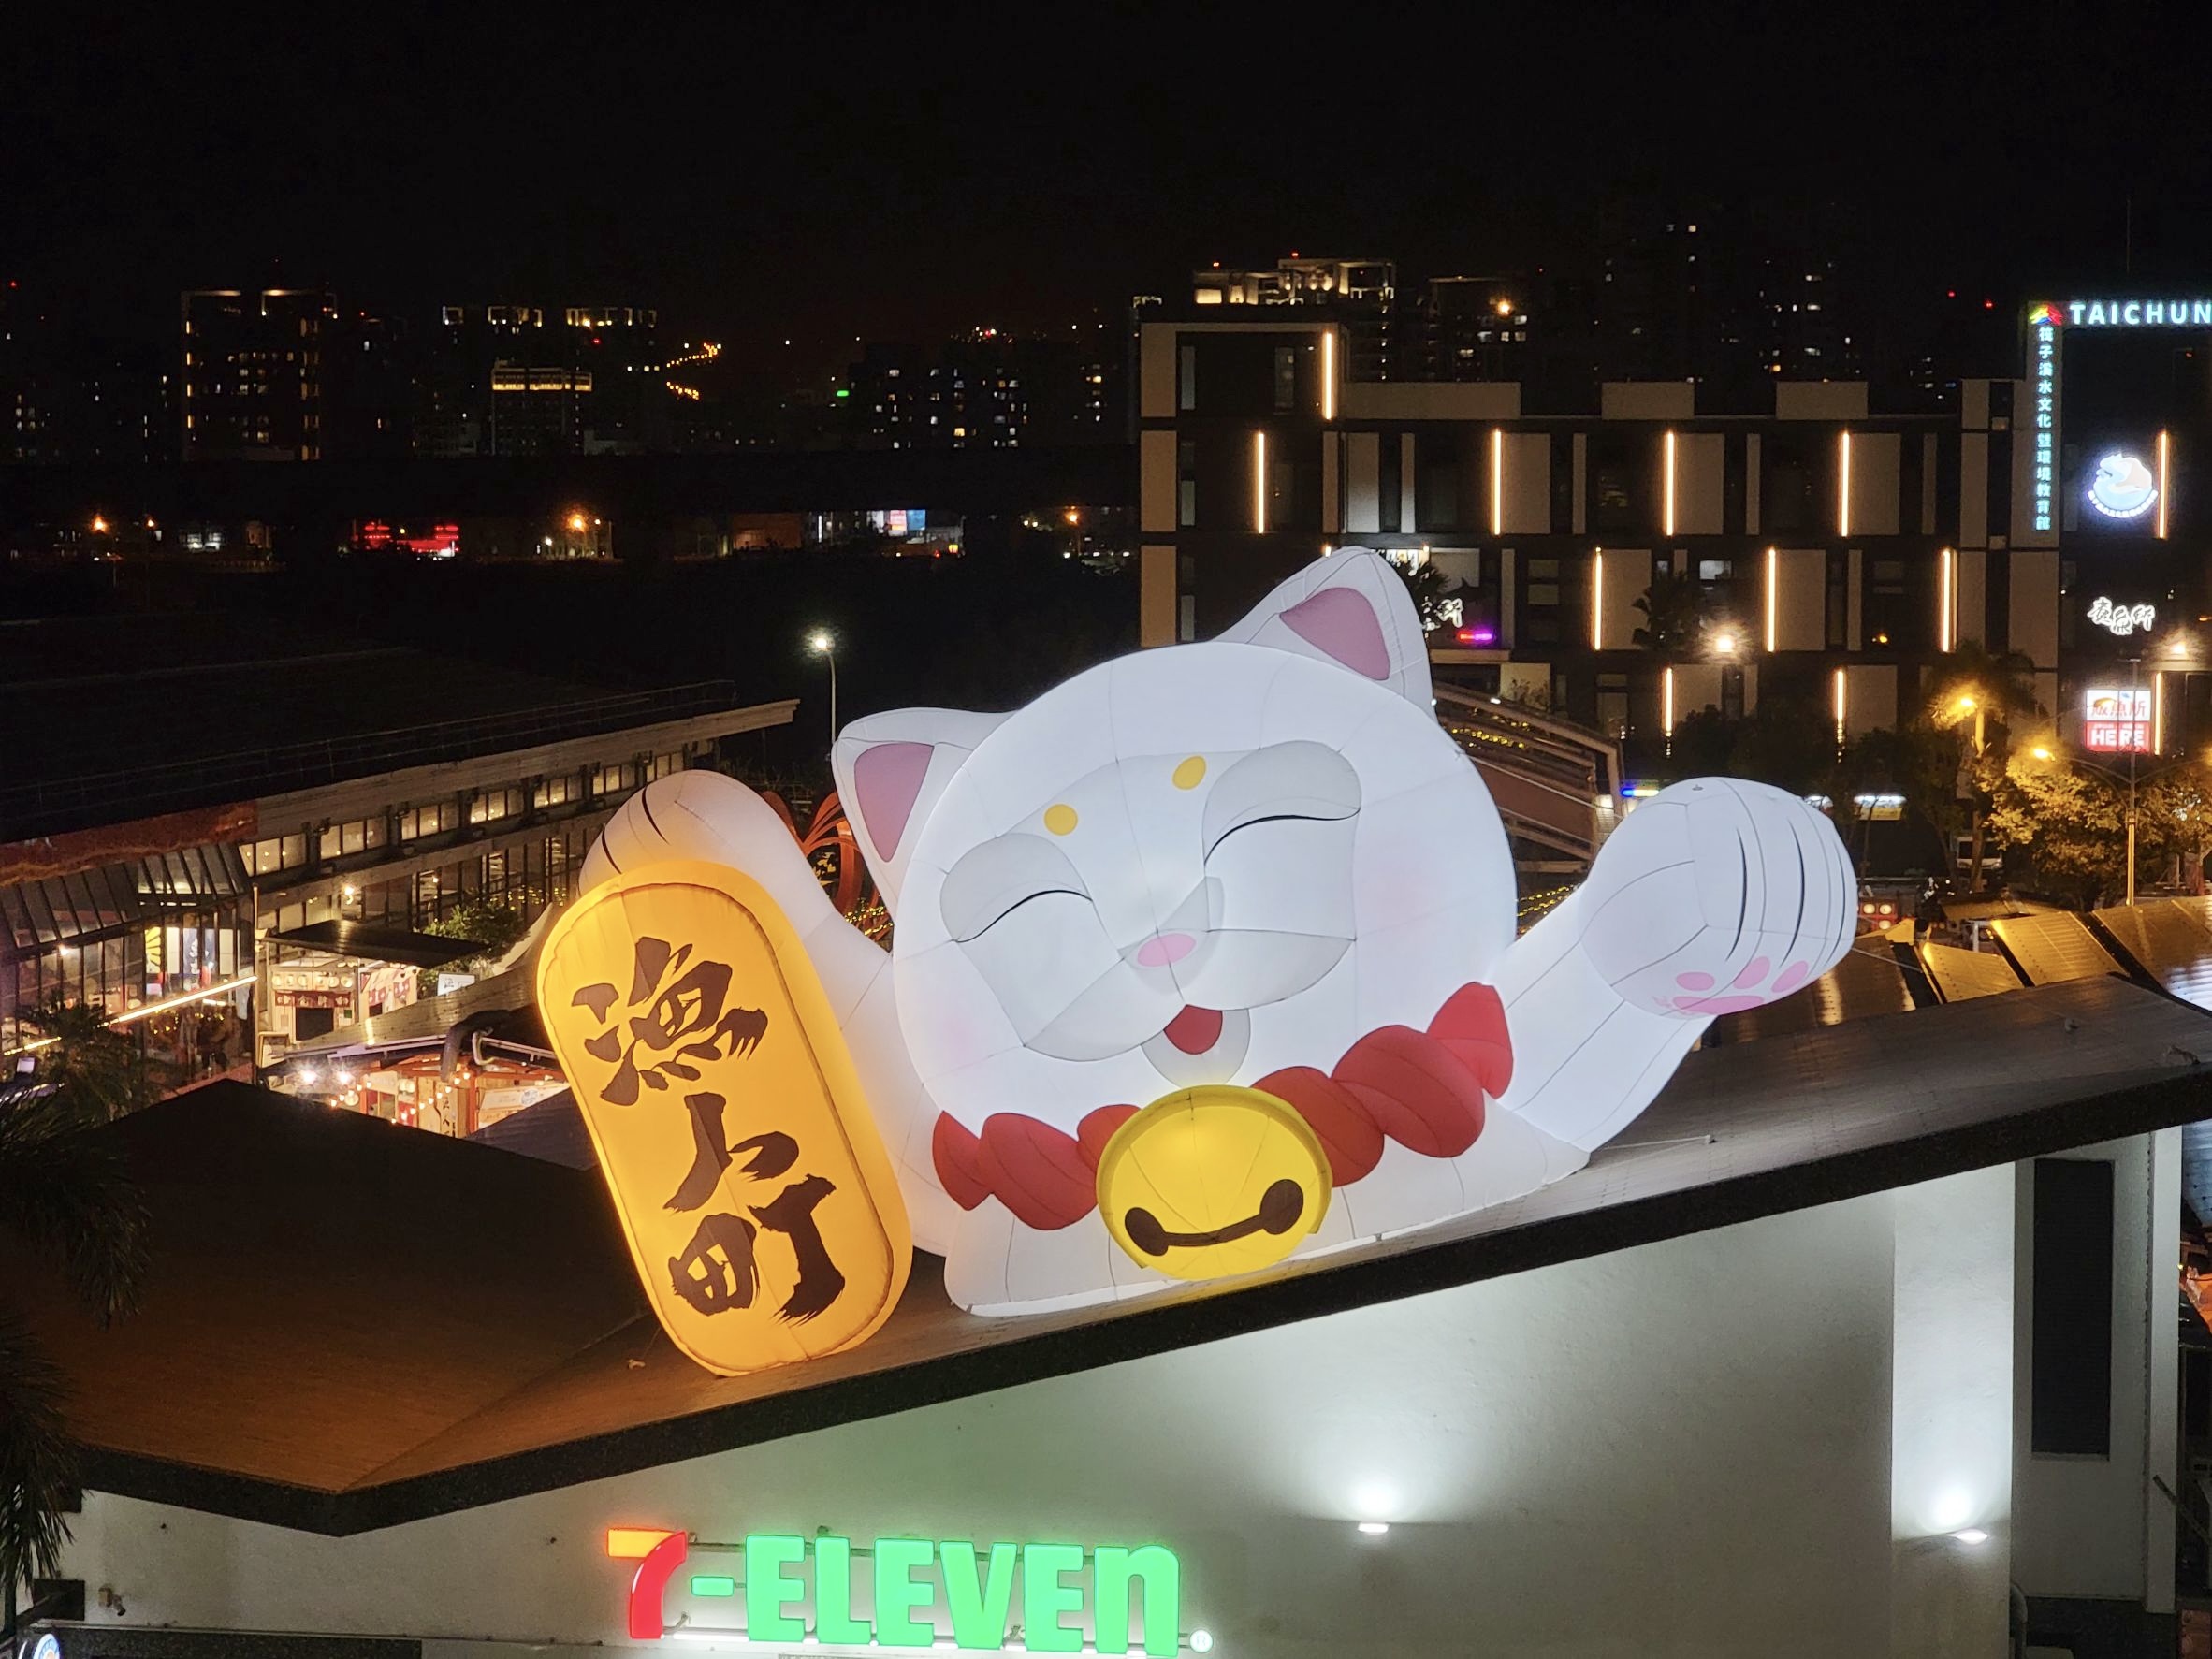 响应儿童节，市集为亲子打造了中台湾大型充气装置艺术「咪将」。渔人町星光市集提供